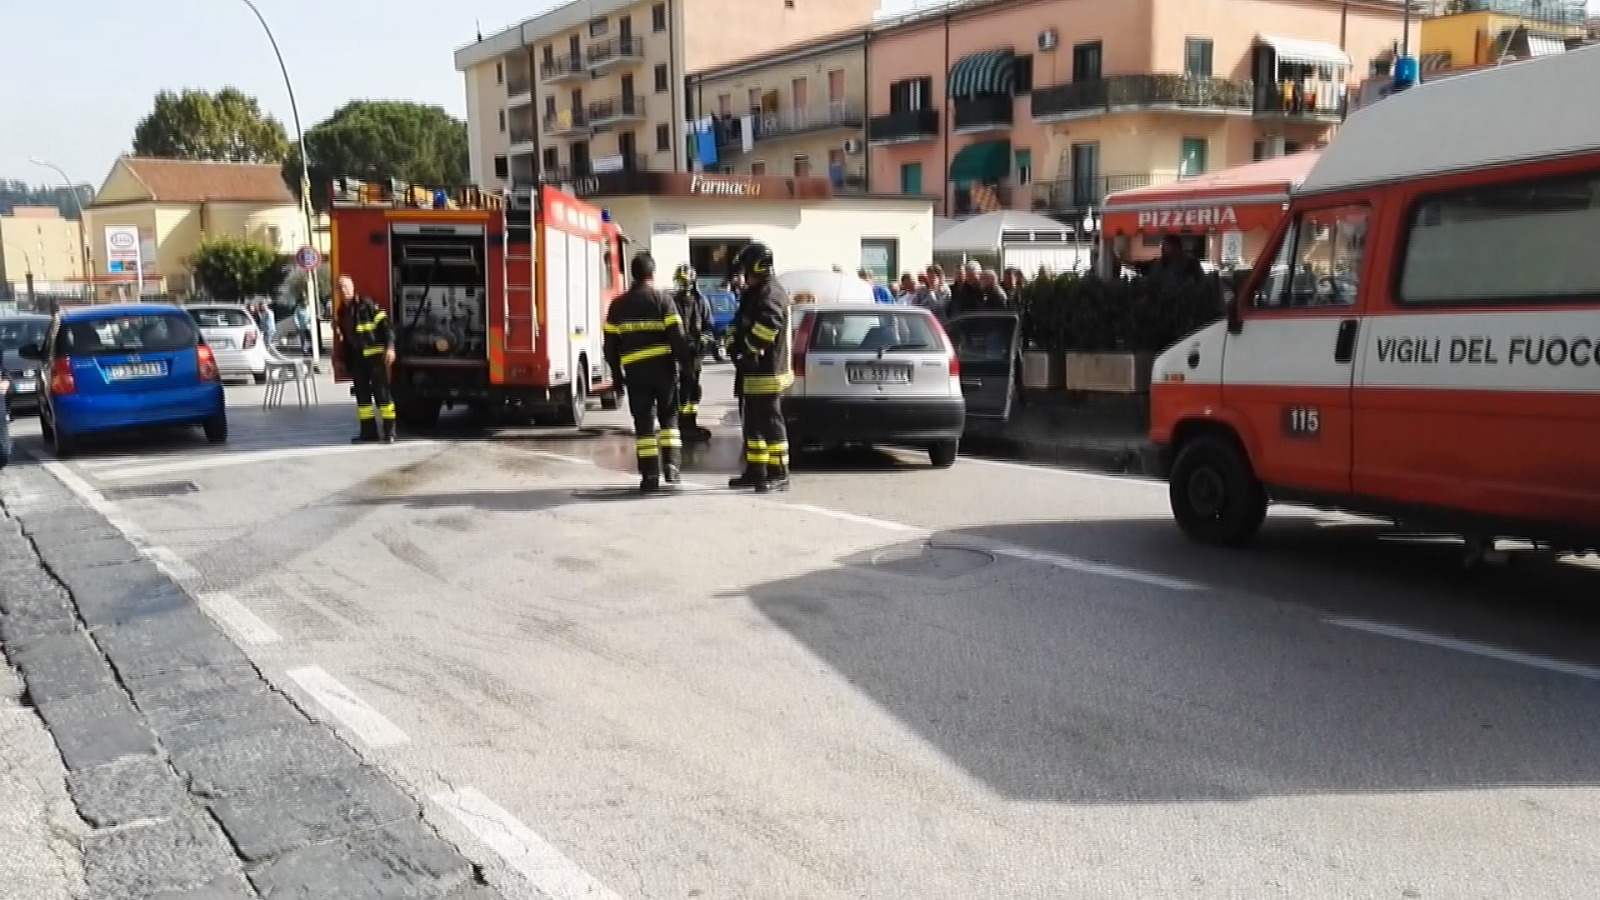 Benevento| Via Napoli, a fuoco auto. Nessun ferito